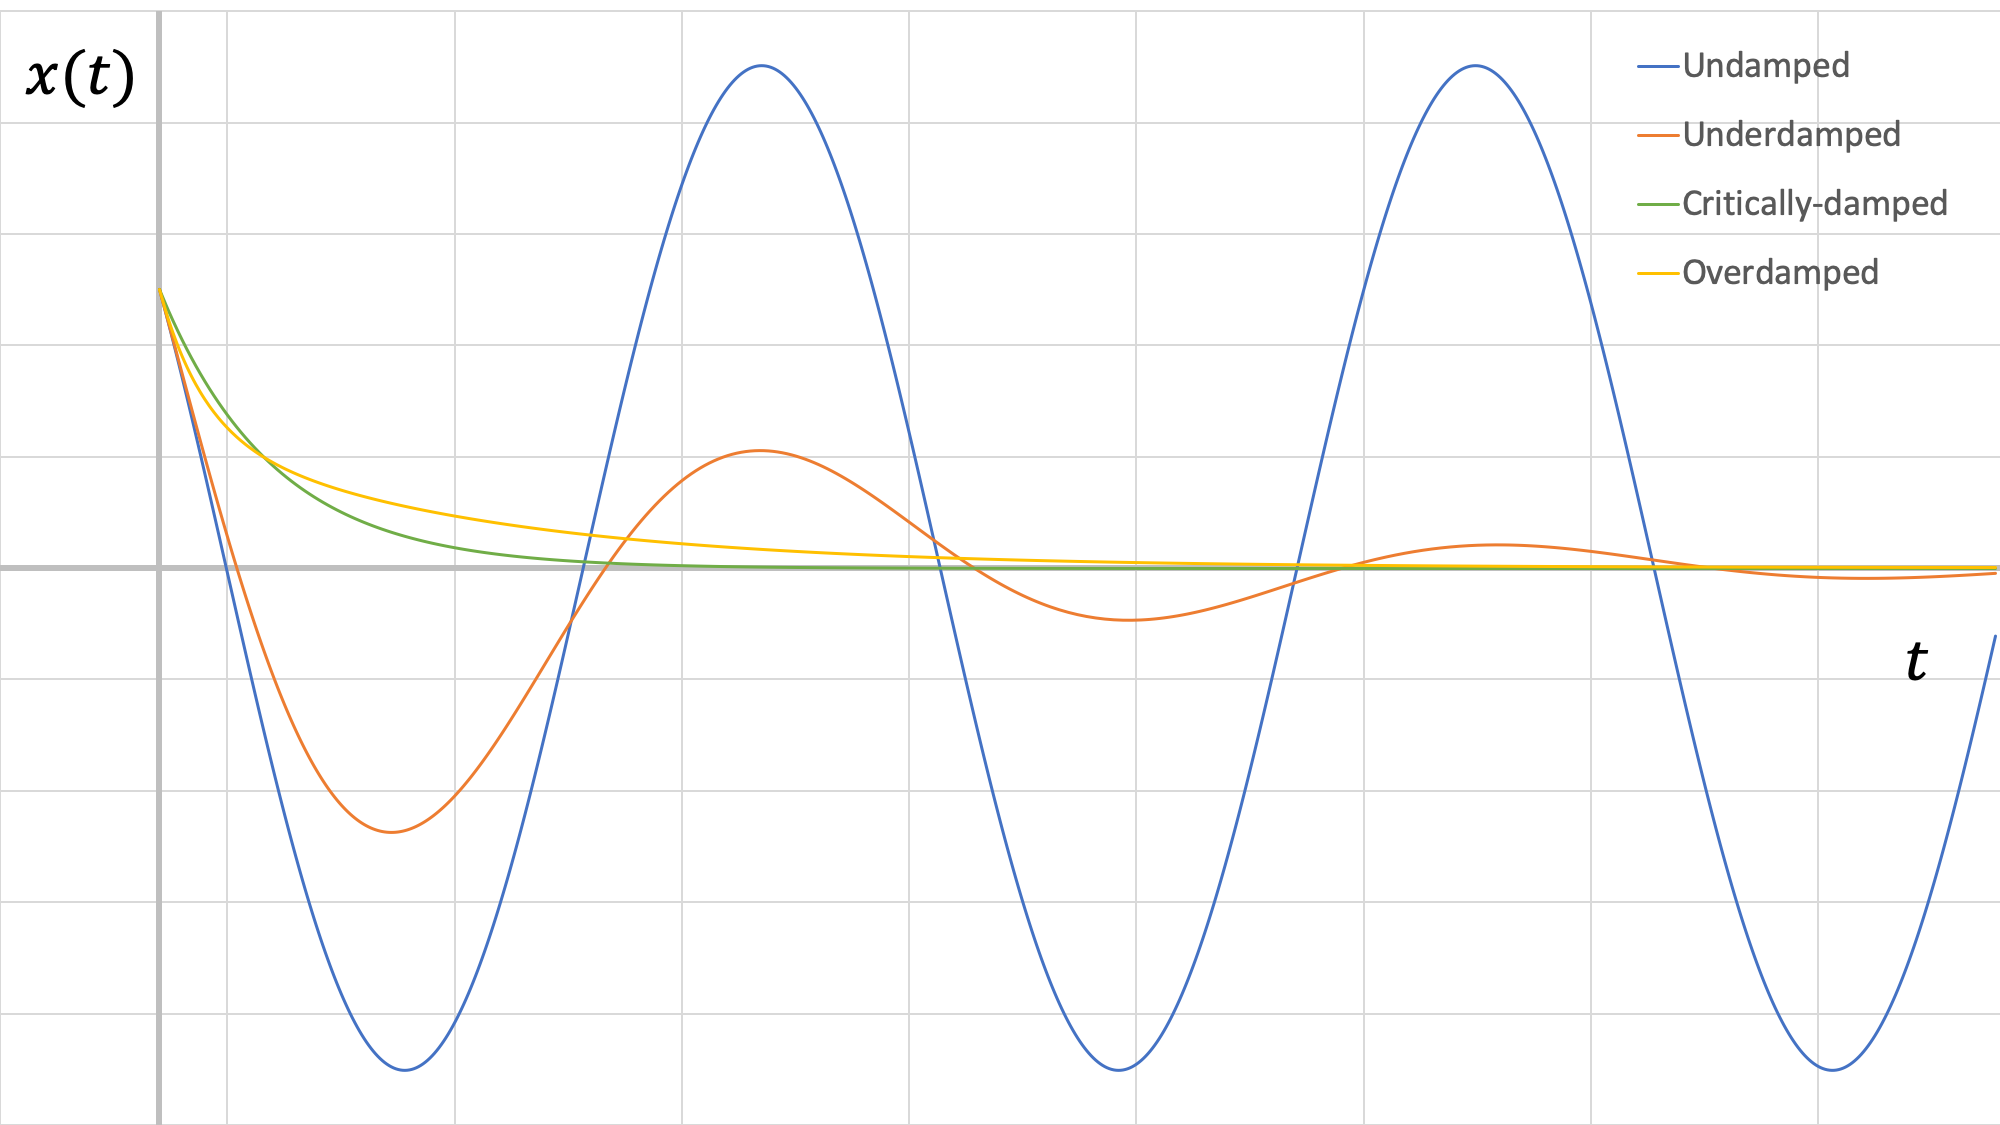 Gráfica comparando los cuatro tipos diferentes de respuestas de amortiguación del sistema. Todas las gráficas se muestran en el mismo conjunto de ejes, con t como eje horizontal y x (t) como vertical. Todas las gráficas comienzan con el mismo valor positivo de x (t) a t = 0. El sistema sin amortiguar, mostrado en azul, oscila alrededor del eje t con amplitud consistente. El sistema subamortiguado, mostrado en rojo, oscila alrededor del eje t con una amplitud decreciente a lo largo del tiempo. El sistema amortiguado críticamente, mostrado en verde, sufre una rápida descomposición exponencial. El sistema sobreamortiguado, mostrado en amarillo, sufre una decadencia exponencial más gradual.